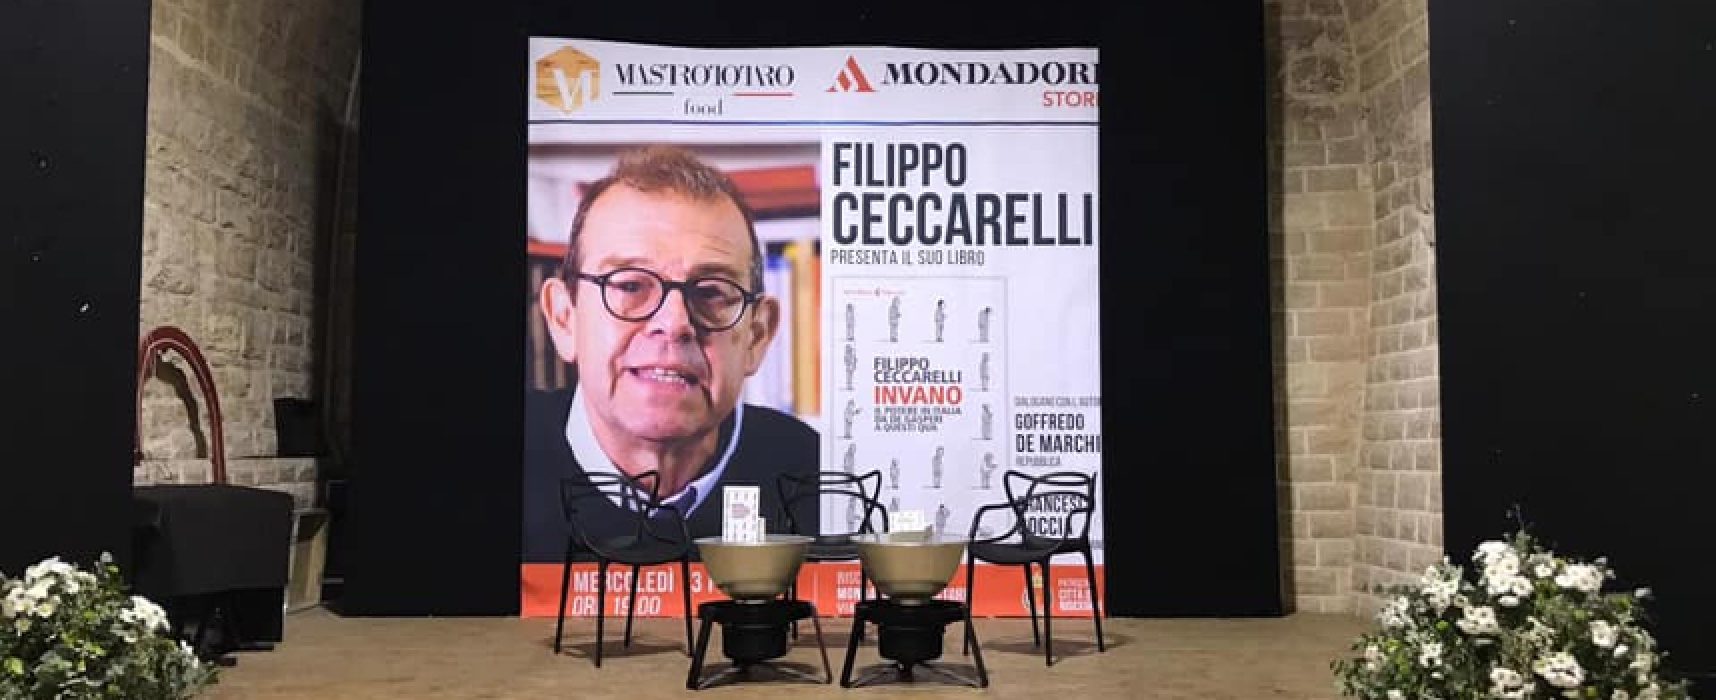 Il giornalista Filippo Ceccarelli presenta “Invano” alle Vecchie Segherie Mastrototaro